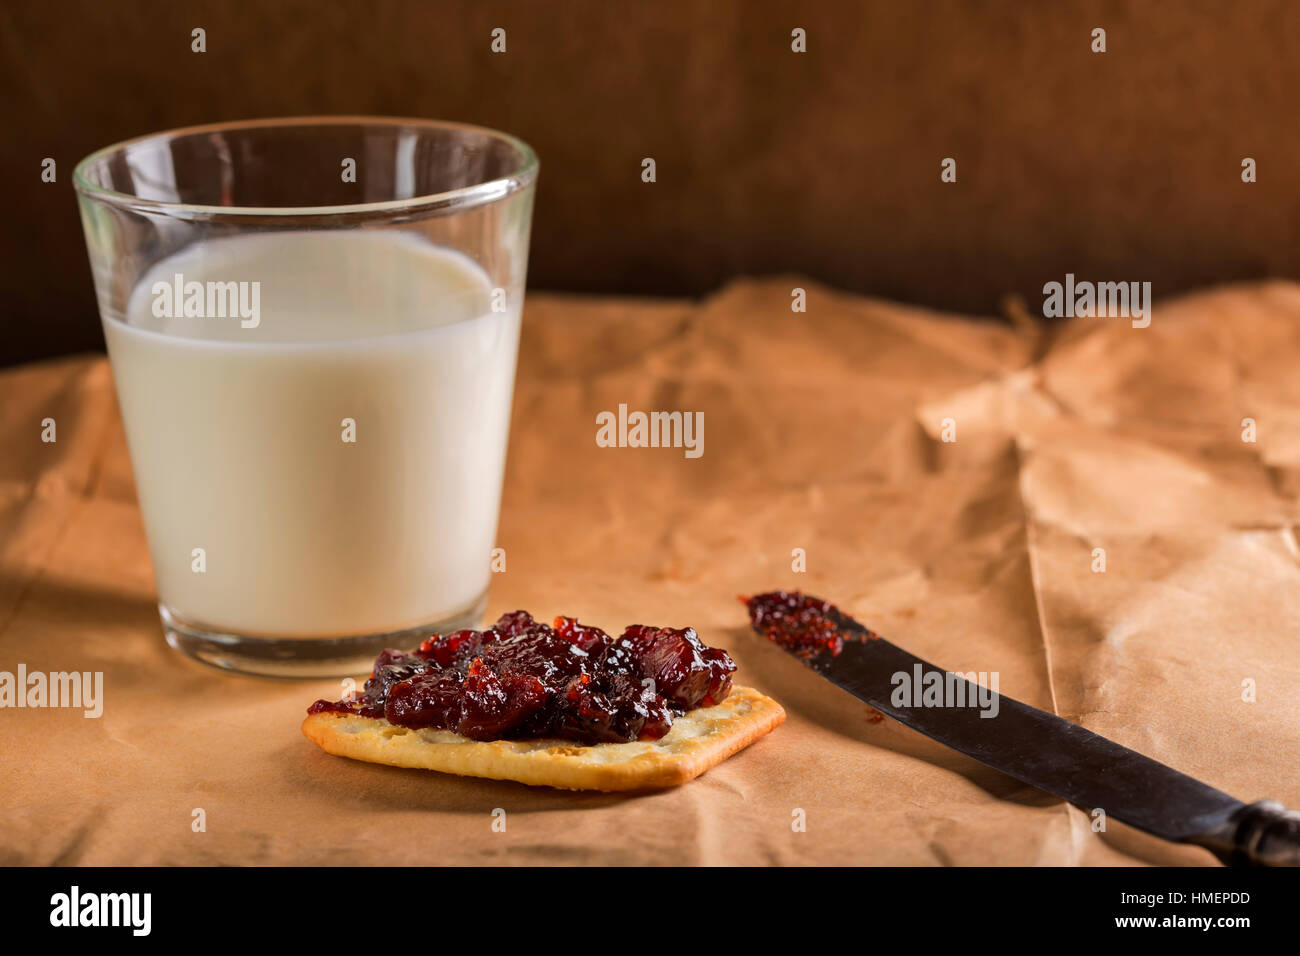 Un biscuit avec de la confiture et un verre rempli de lait en arrière-plan sur papier Banque D'Images